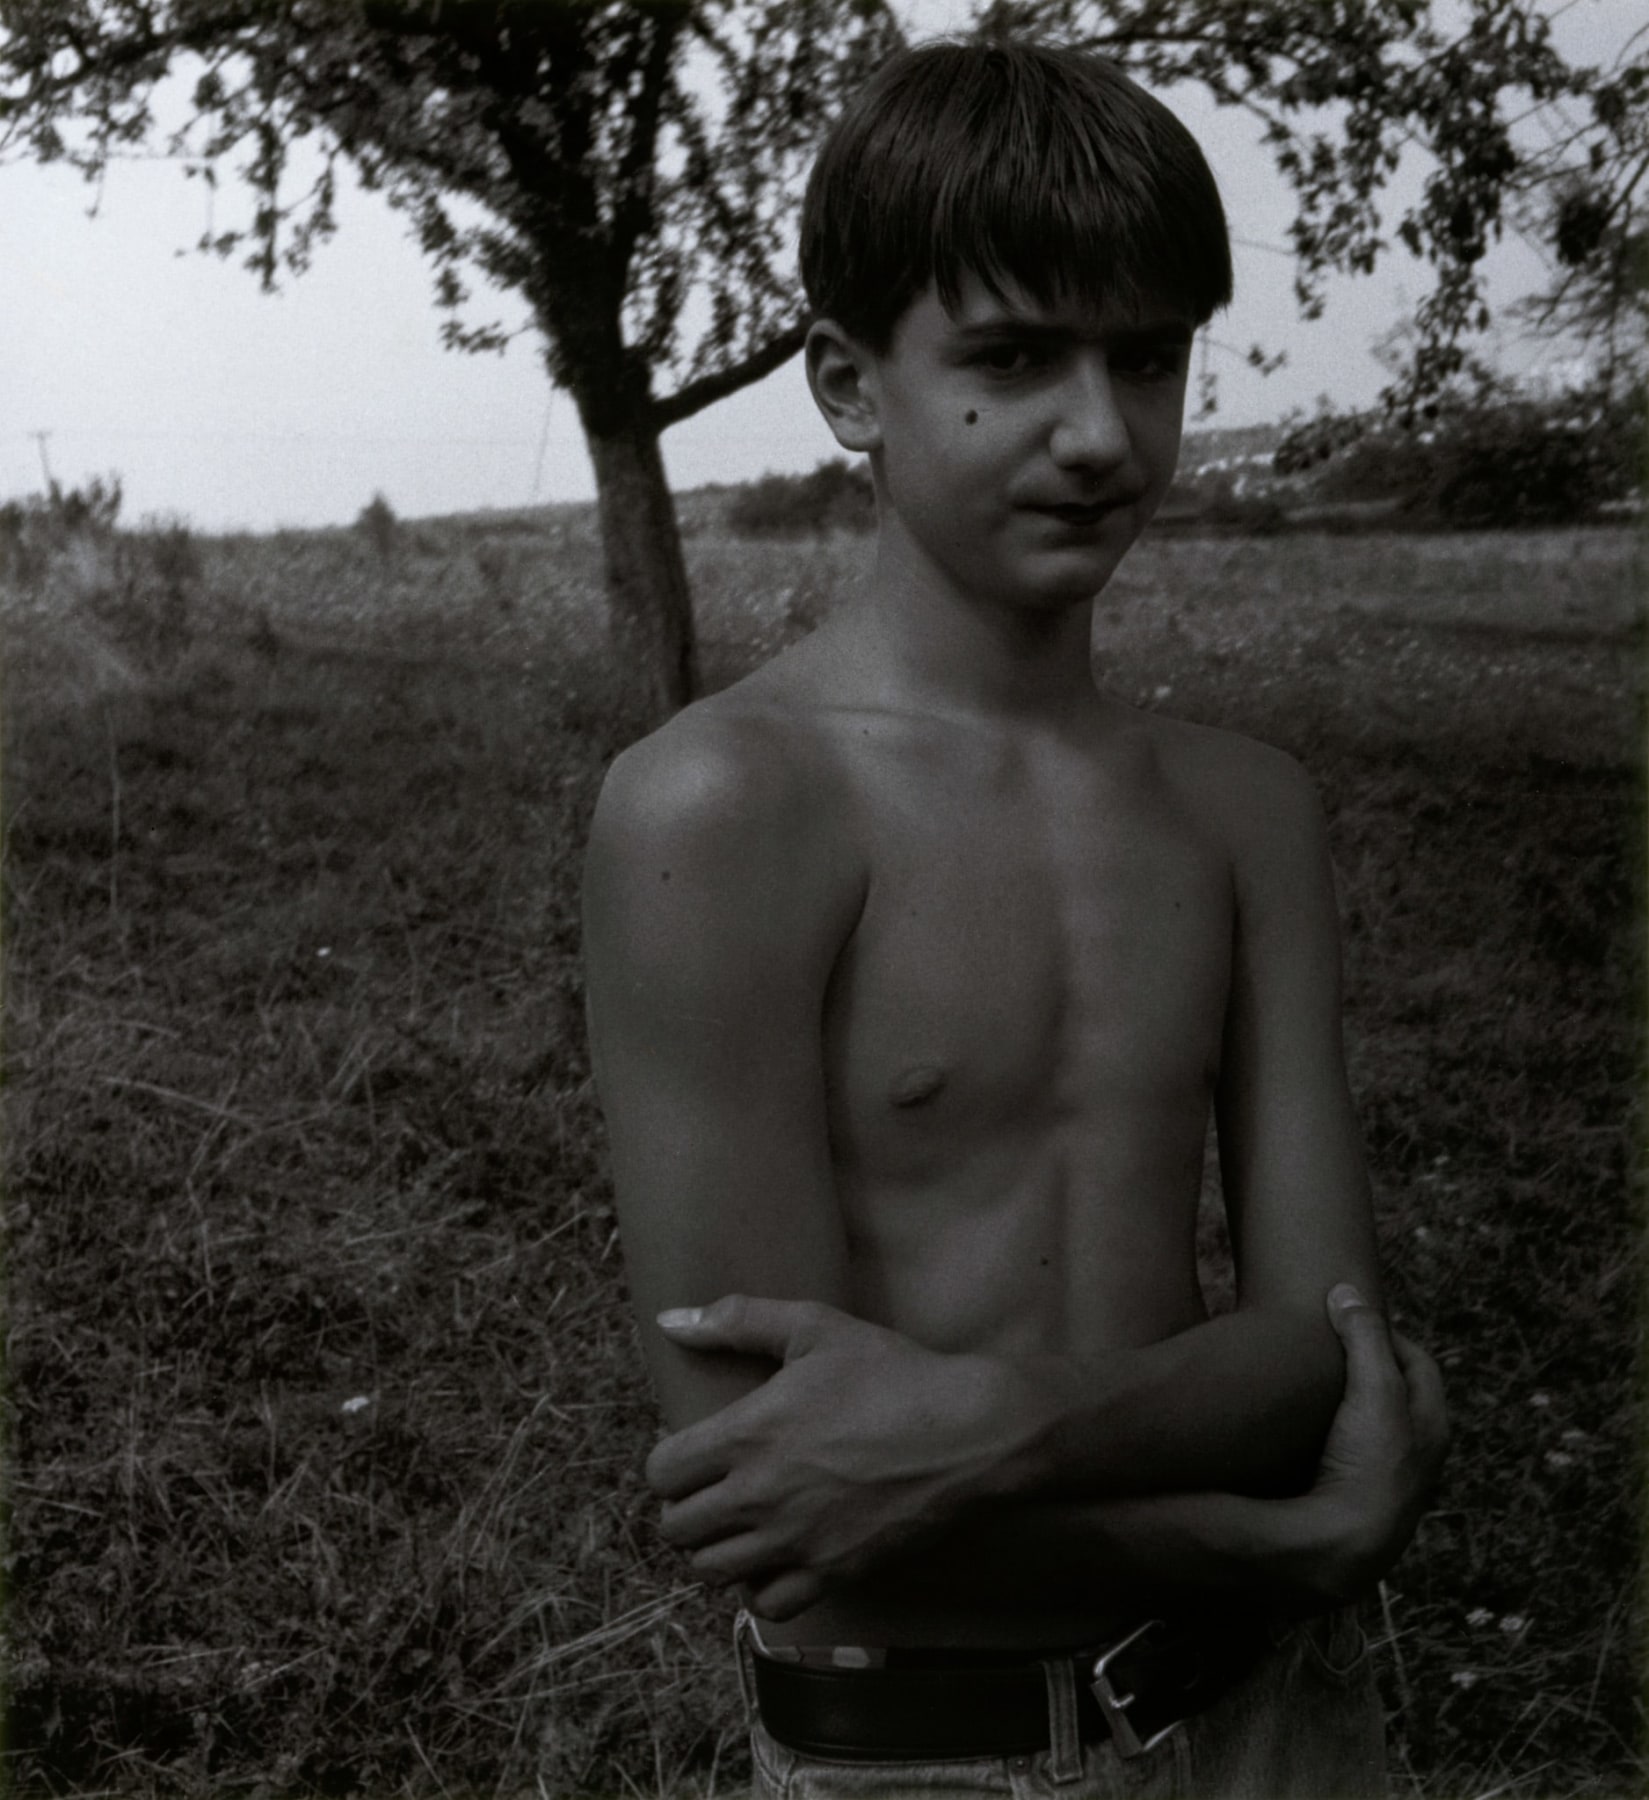 Collier Schorr, James Purdy's Boy, 1994